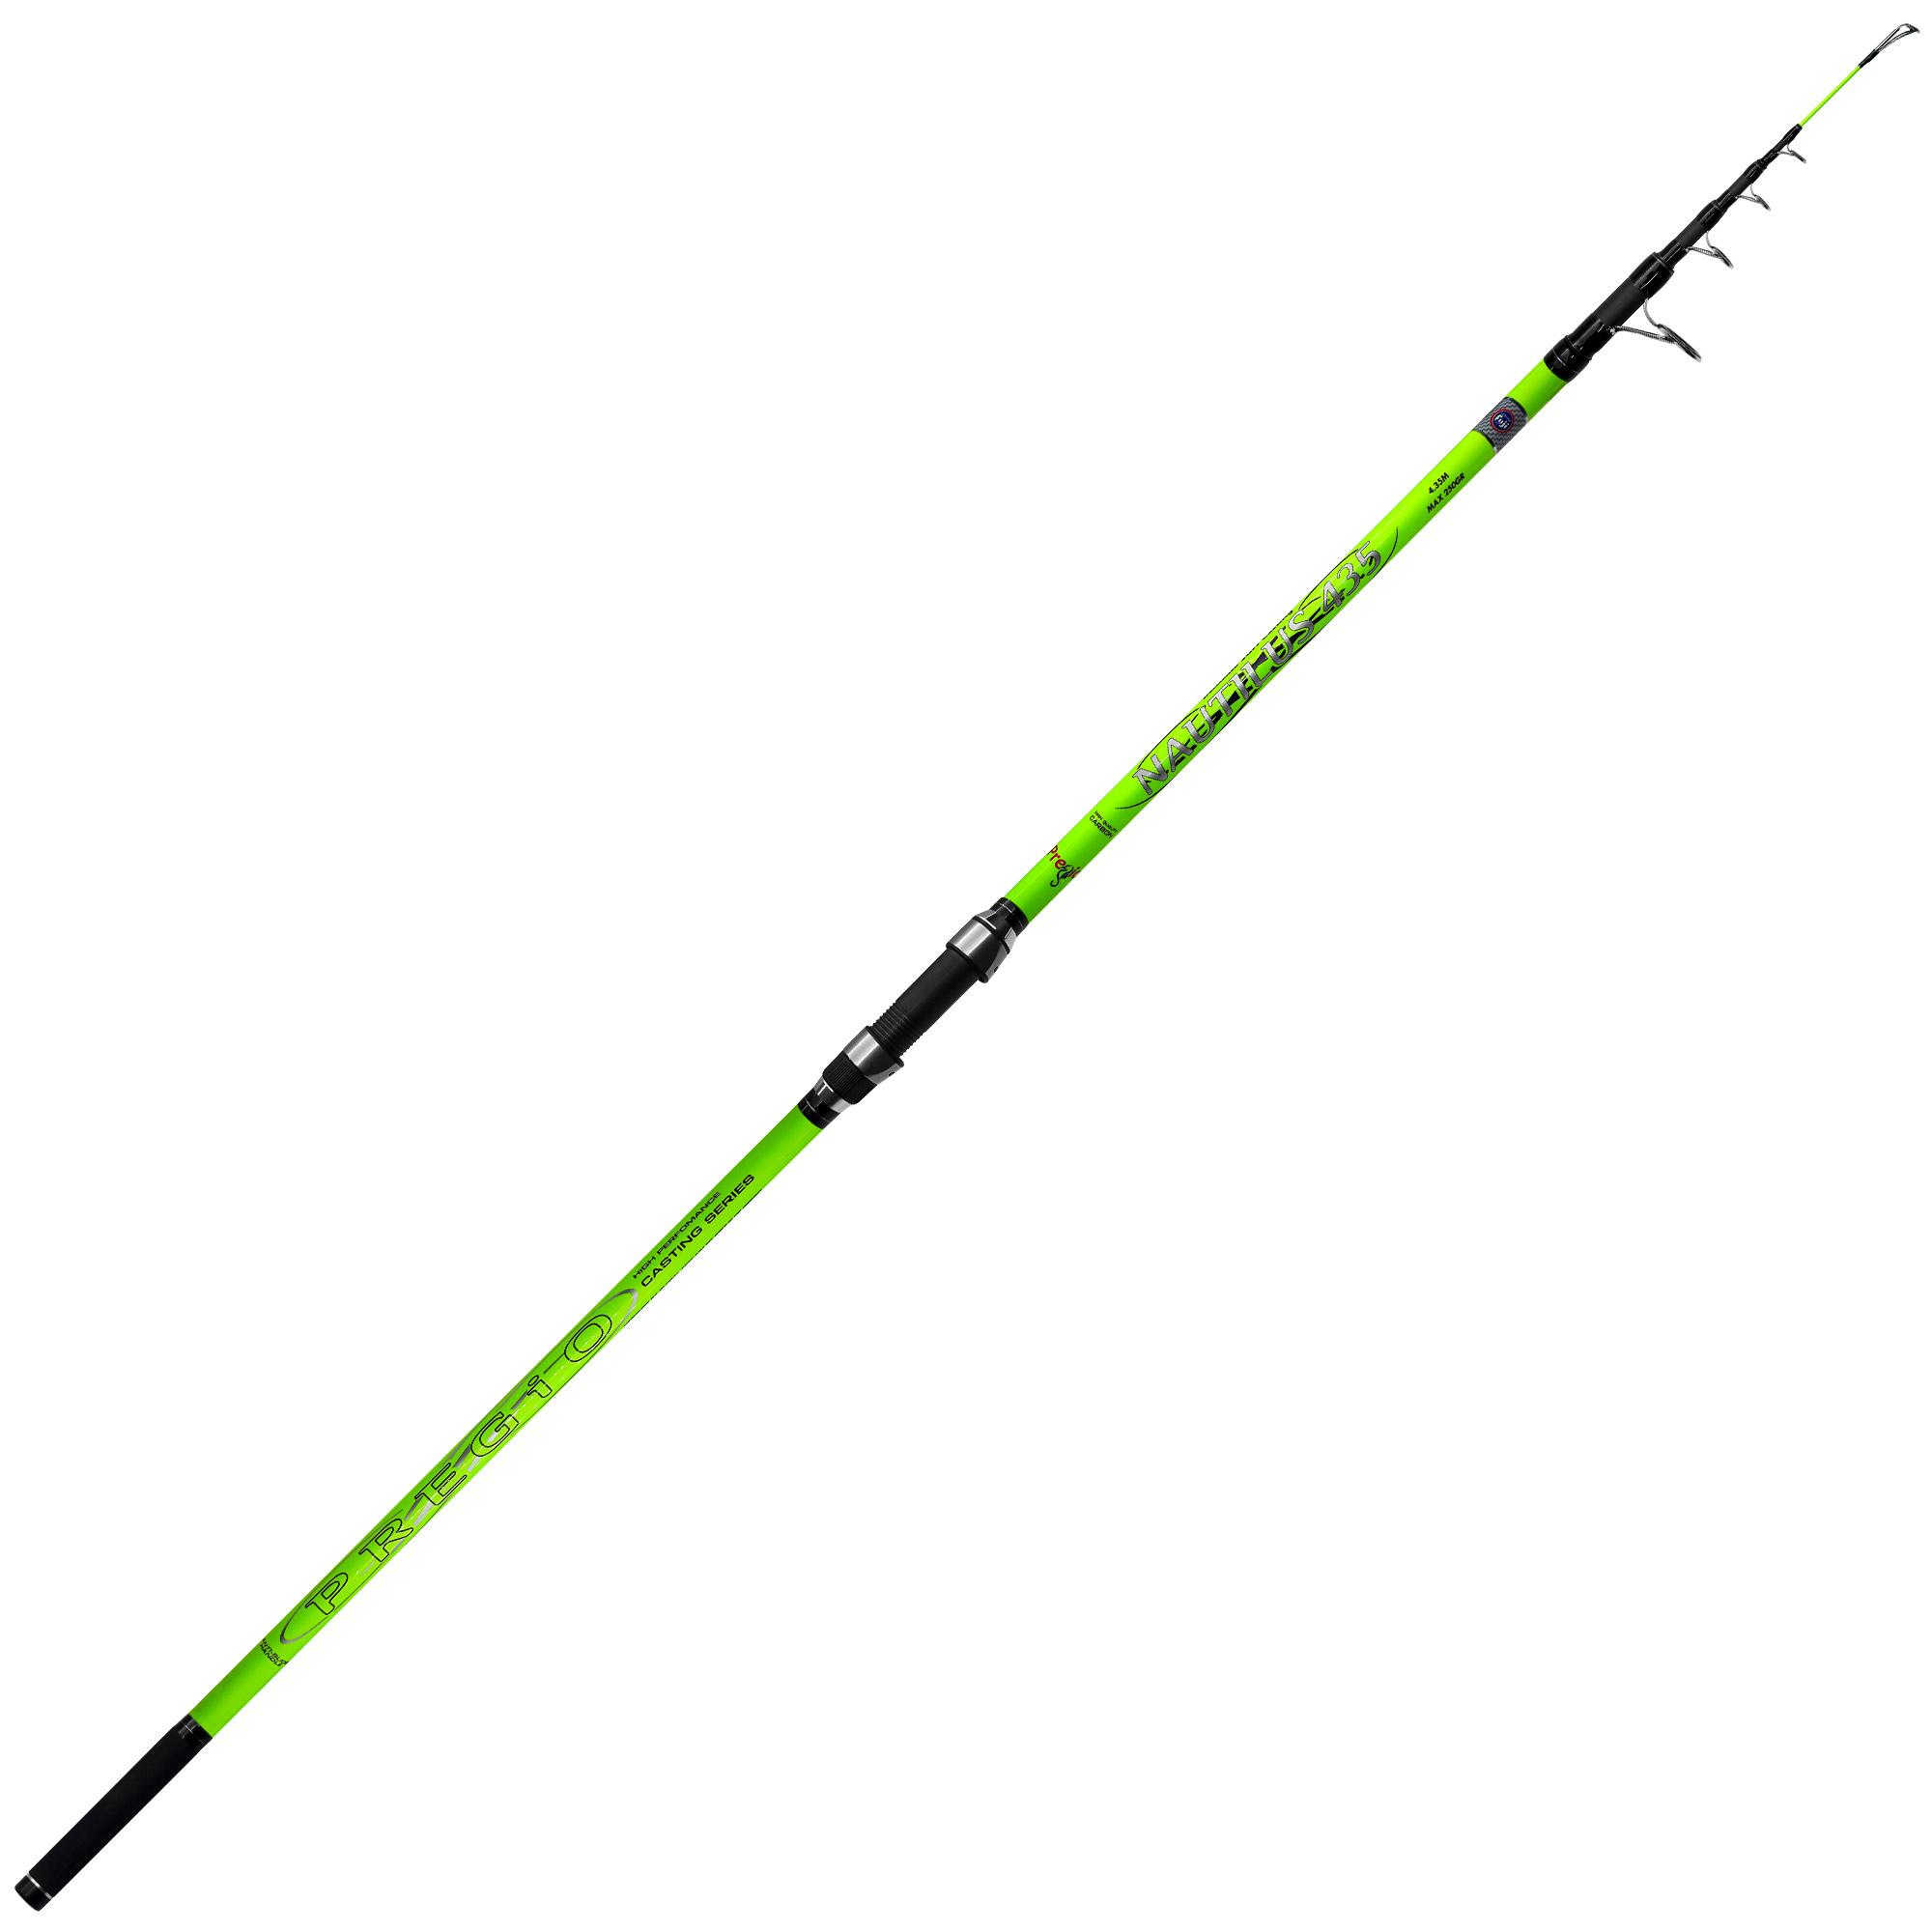 Fishing Rods - Fishing Rods for Shore - Fishing Rods for Surf Casting - Surf  Casting Fishing Rod Pregio Nautilus 435 19-435